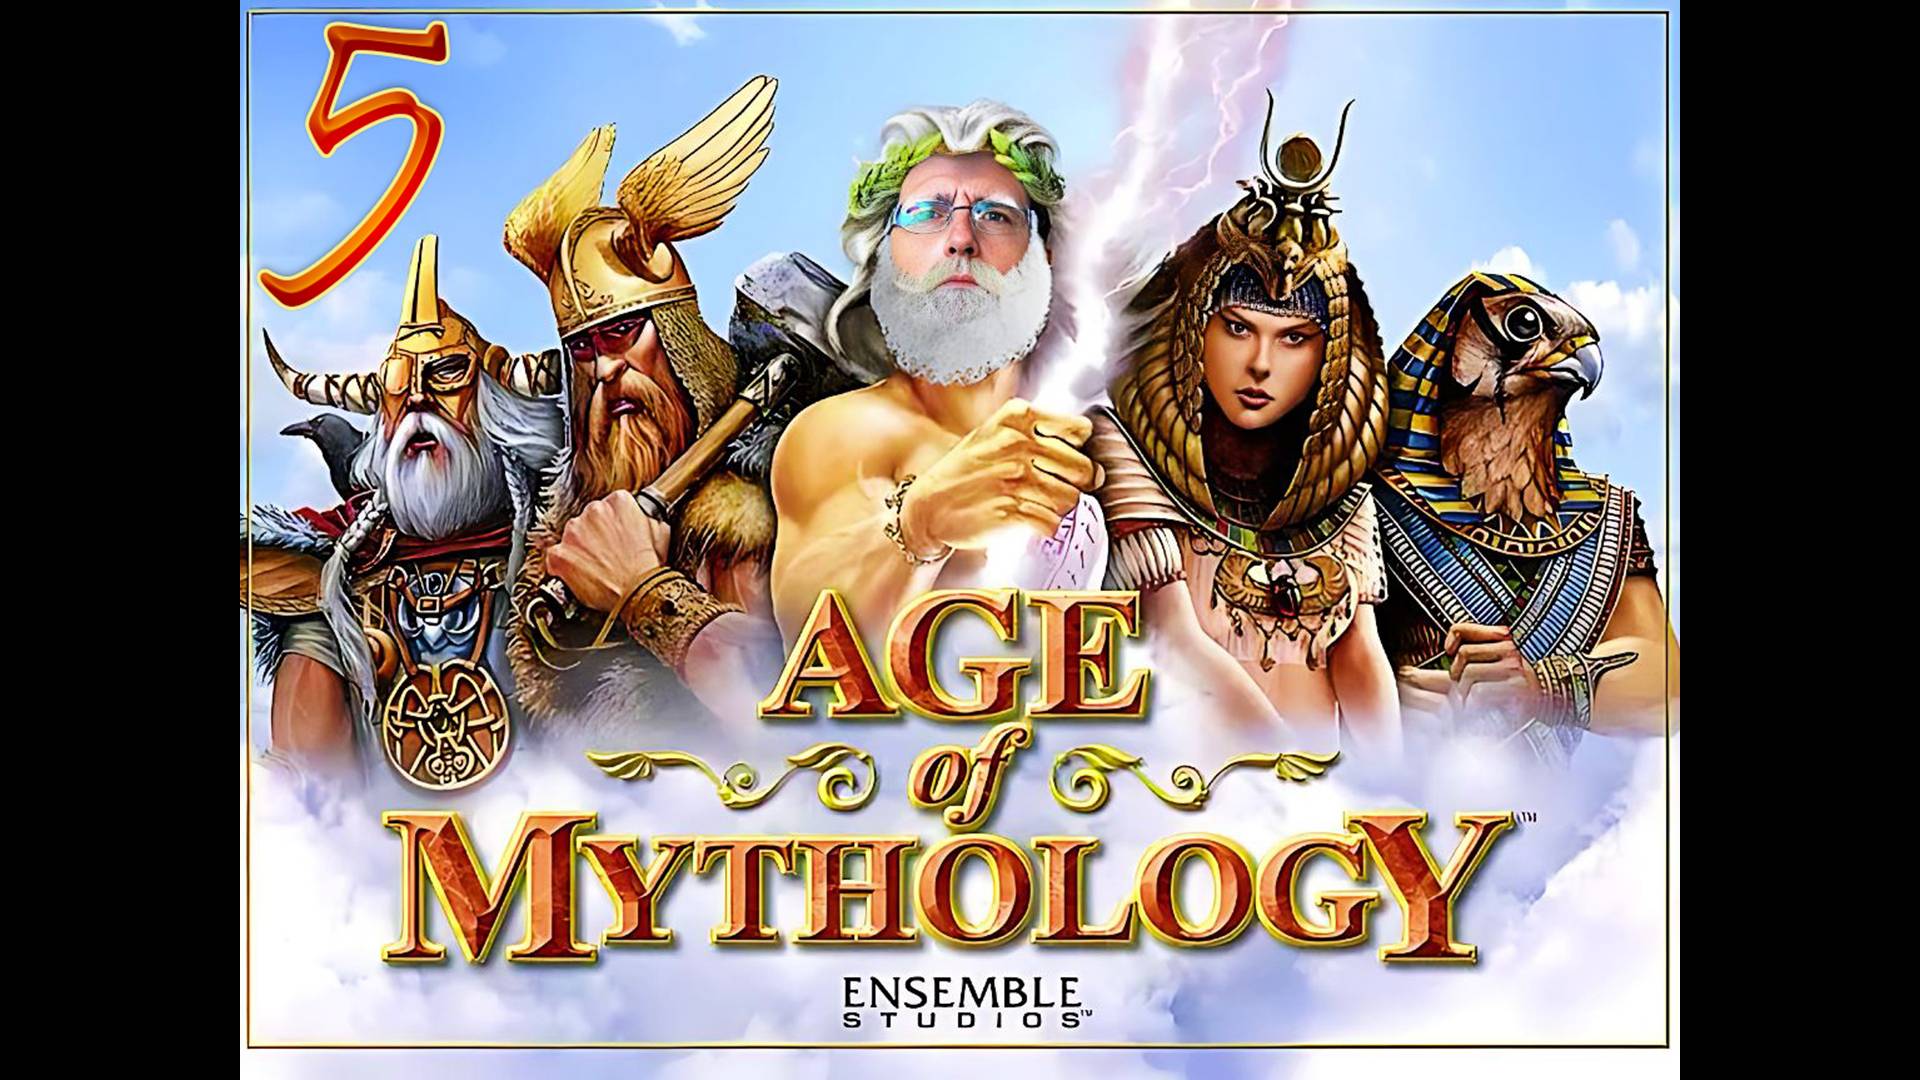 Age of Mythology 📯 Пролог: перепуганные овцы 5. Достаточно веревки #AoM